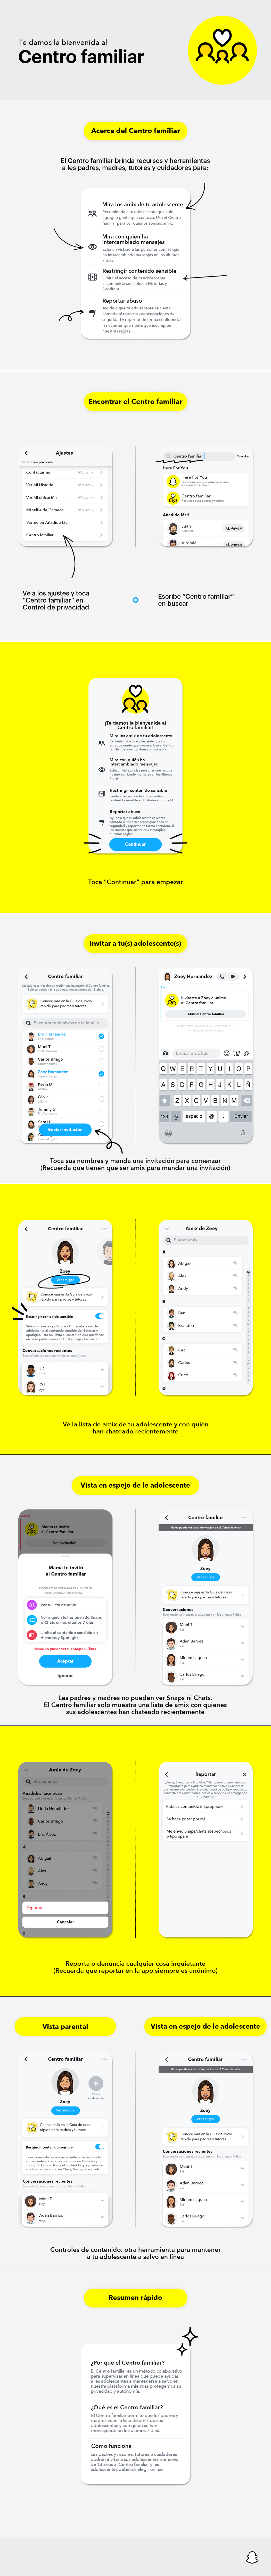 Snapchat: Nueva función de control parental